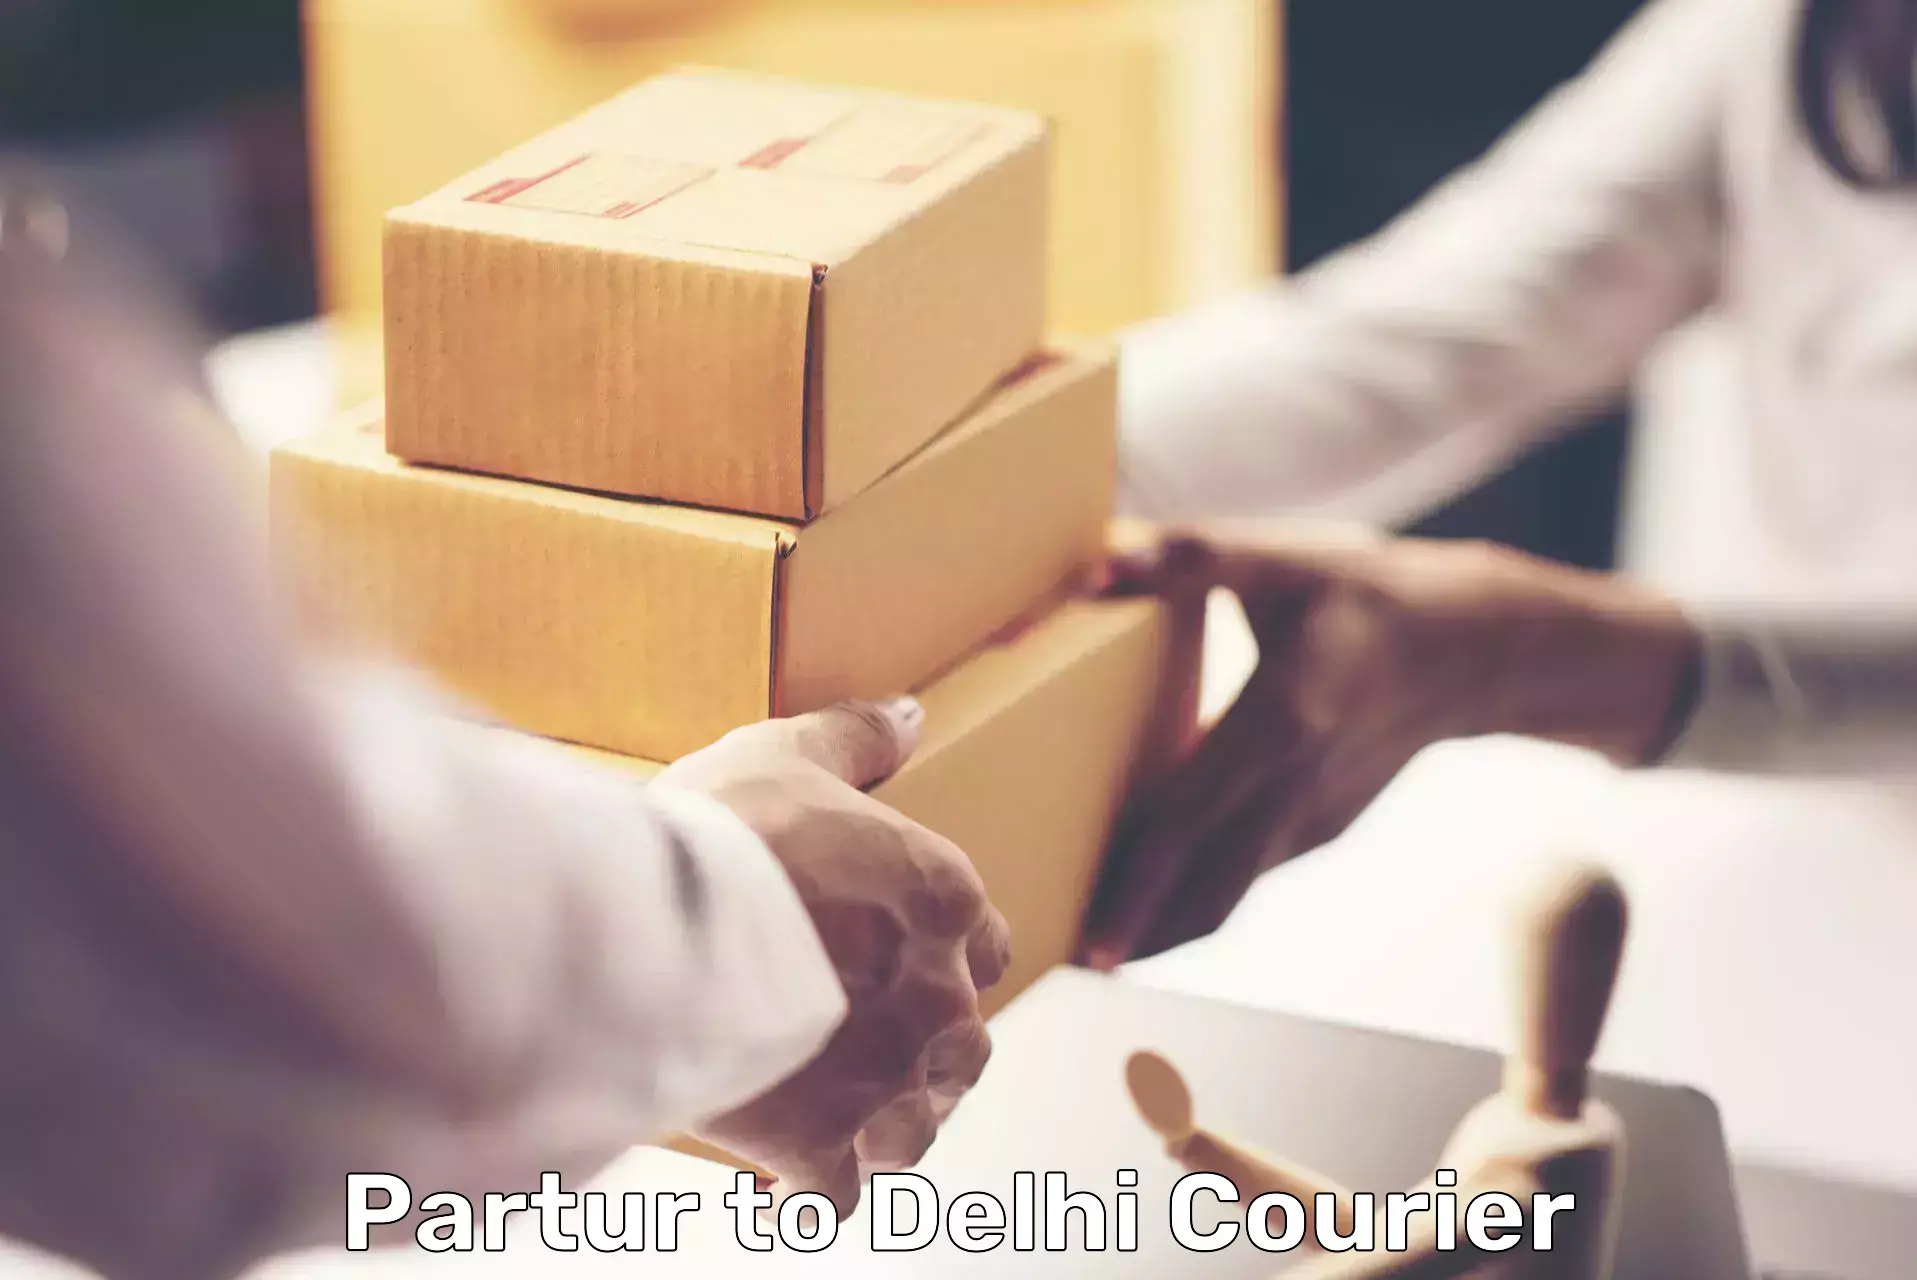 Cost-effective courier options Partur to Delhi